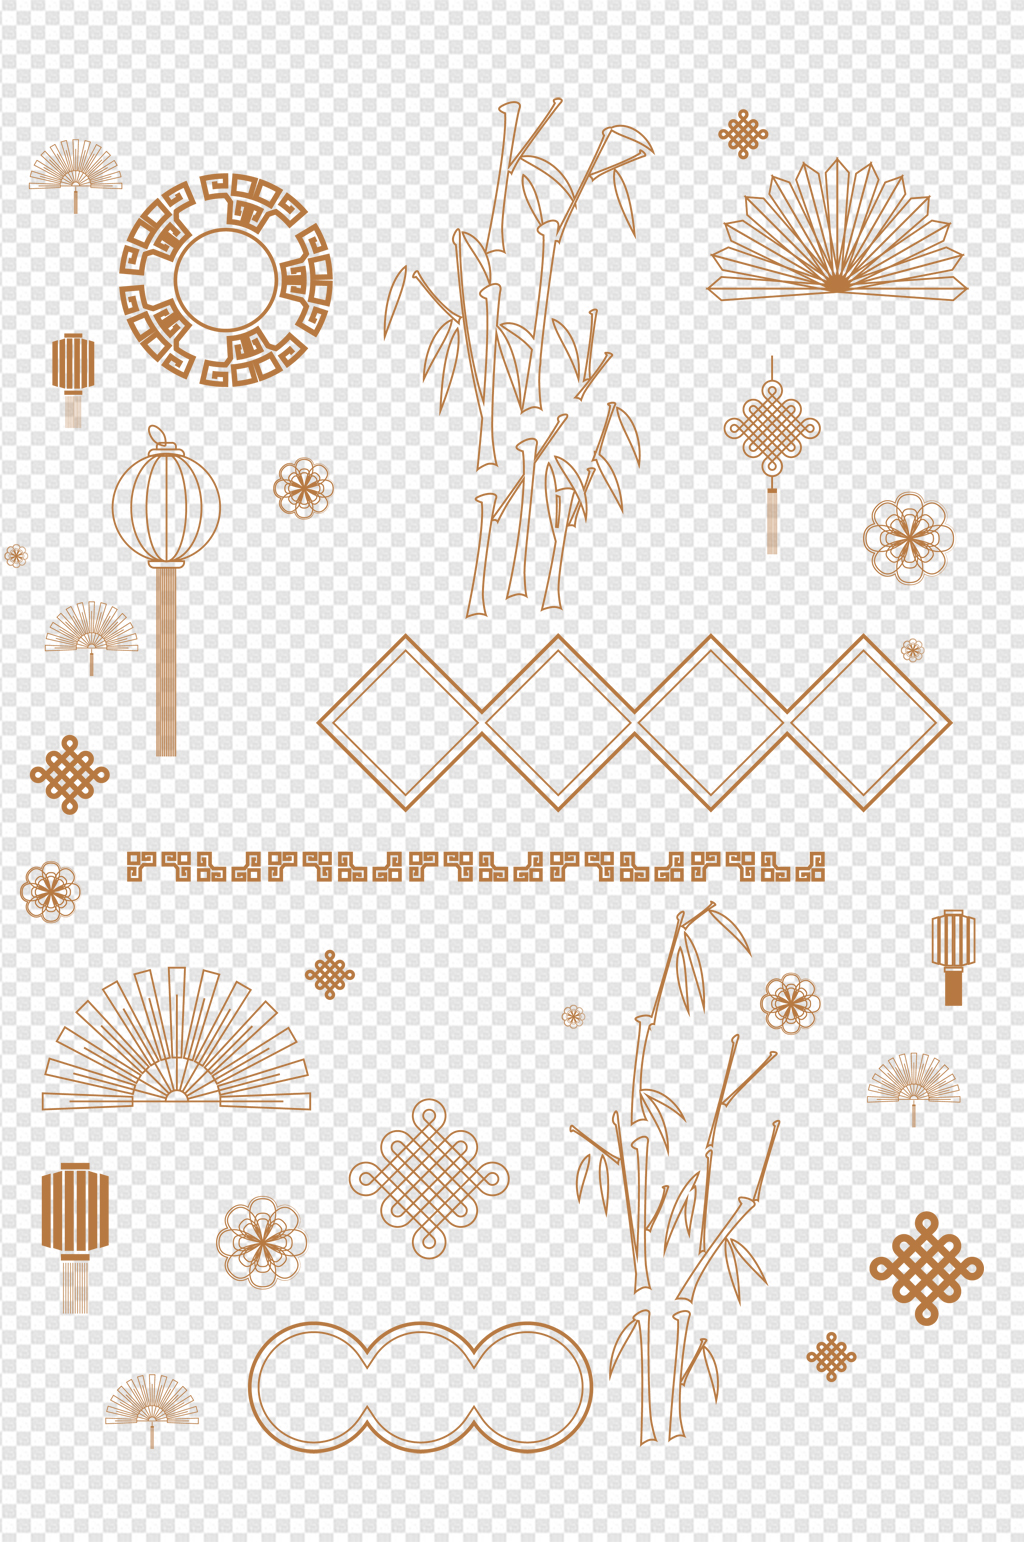 中国风纹理花纹边框设计素材